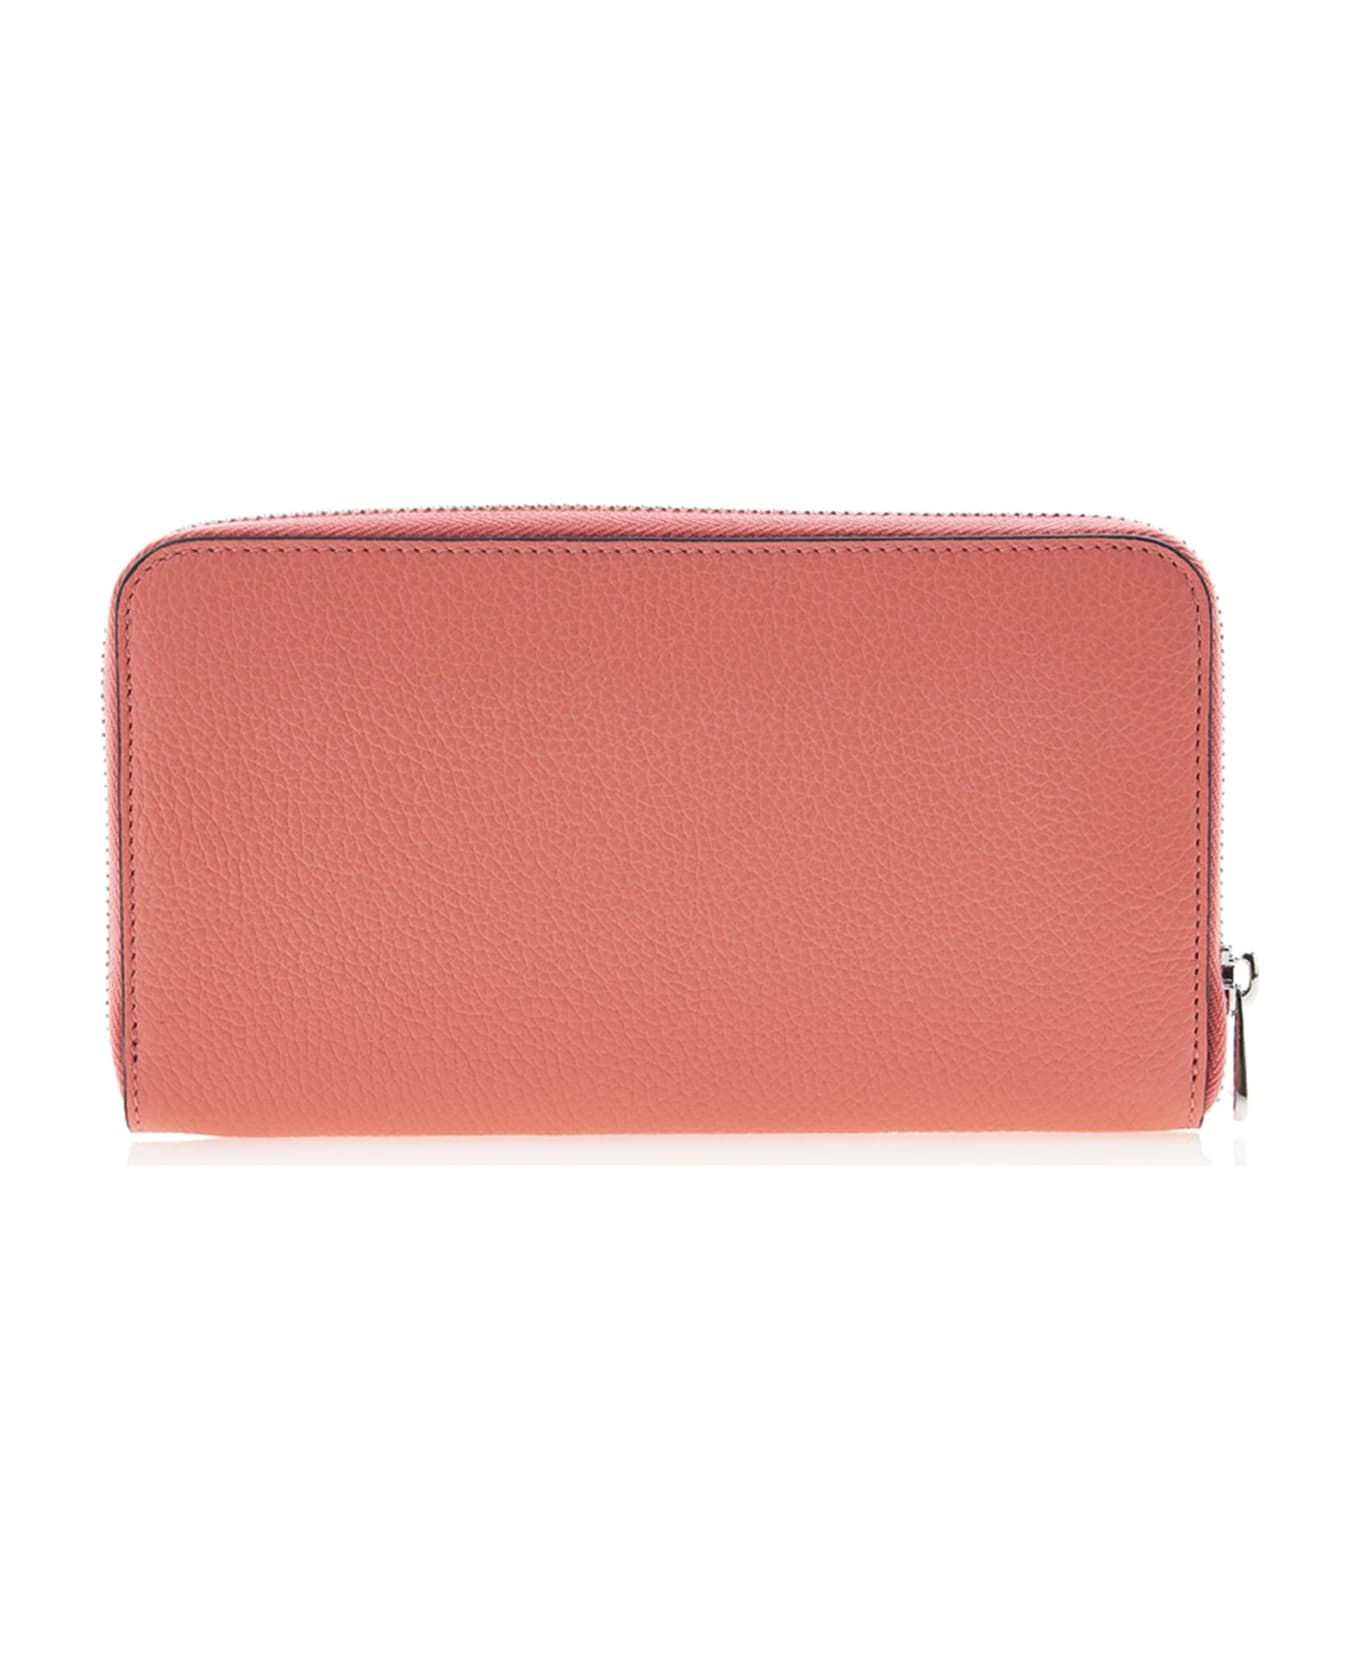 Ferragamo Logo Leather Wallet - Pink